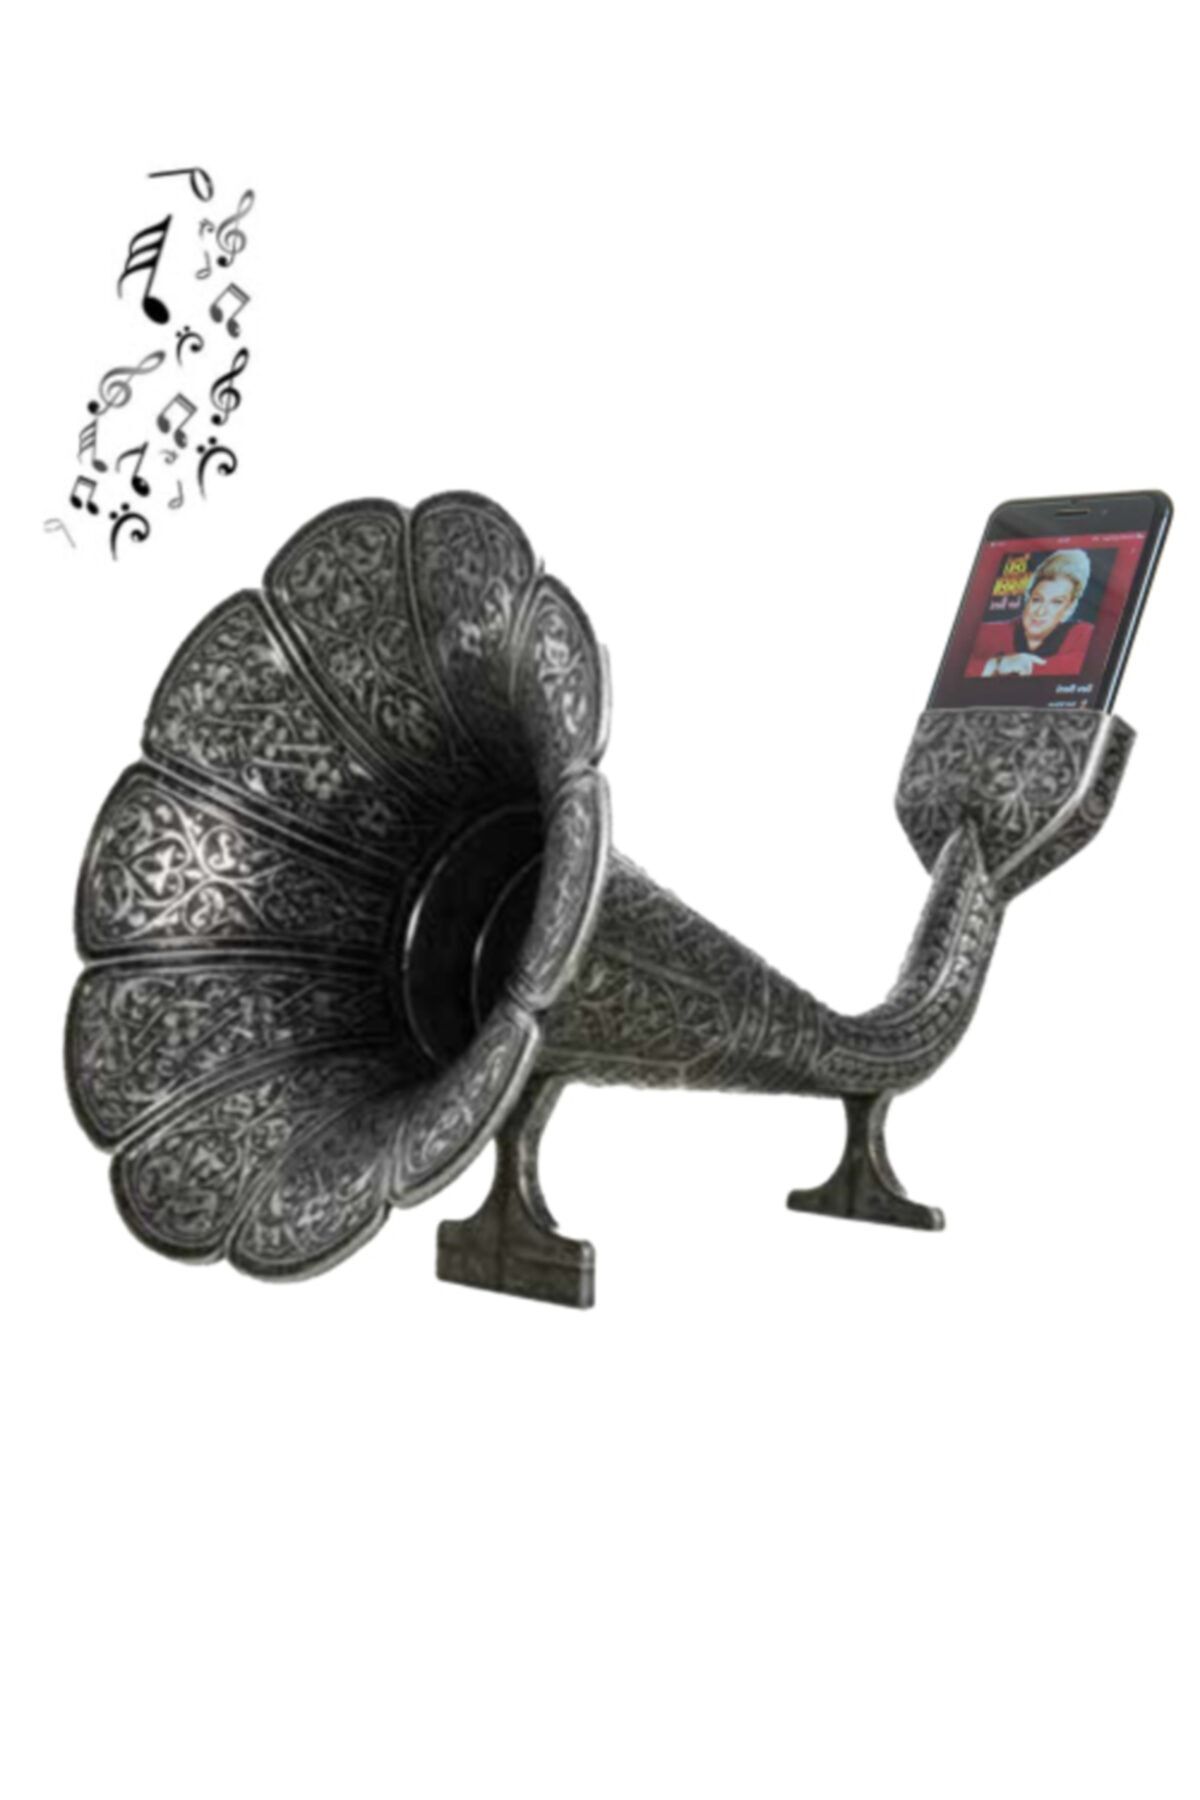 BAZAAR 4 Nostaljik Gramofoni Ses Sistemi Antik Gümüş